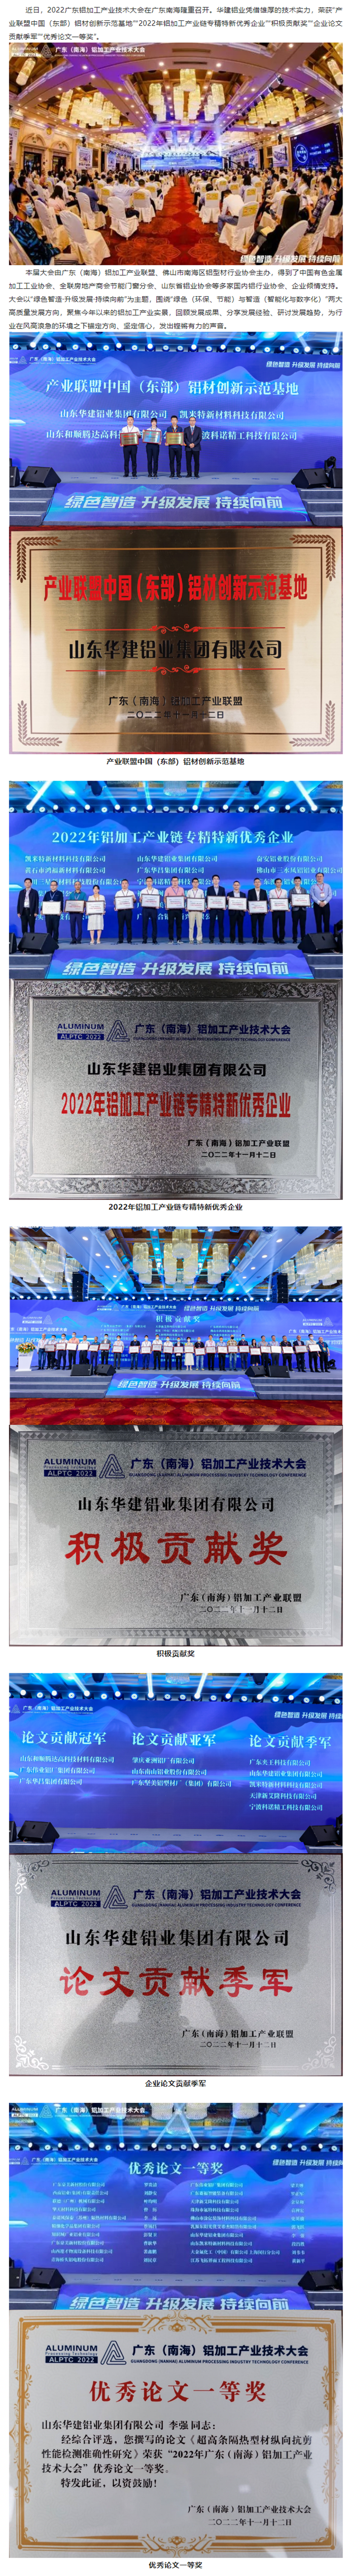 華建鋁業出席廣東（南海）鋁加工產業技術大會並榮獲多個獎項11_副本.png